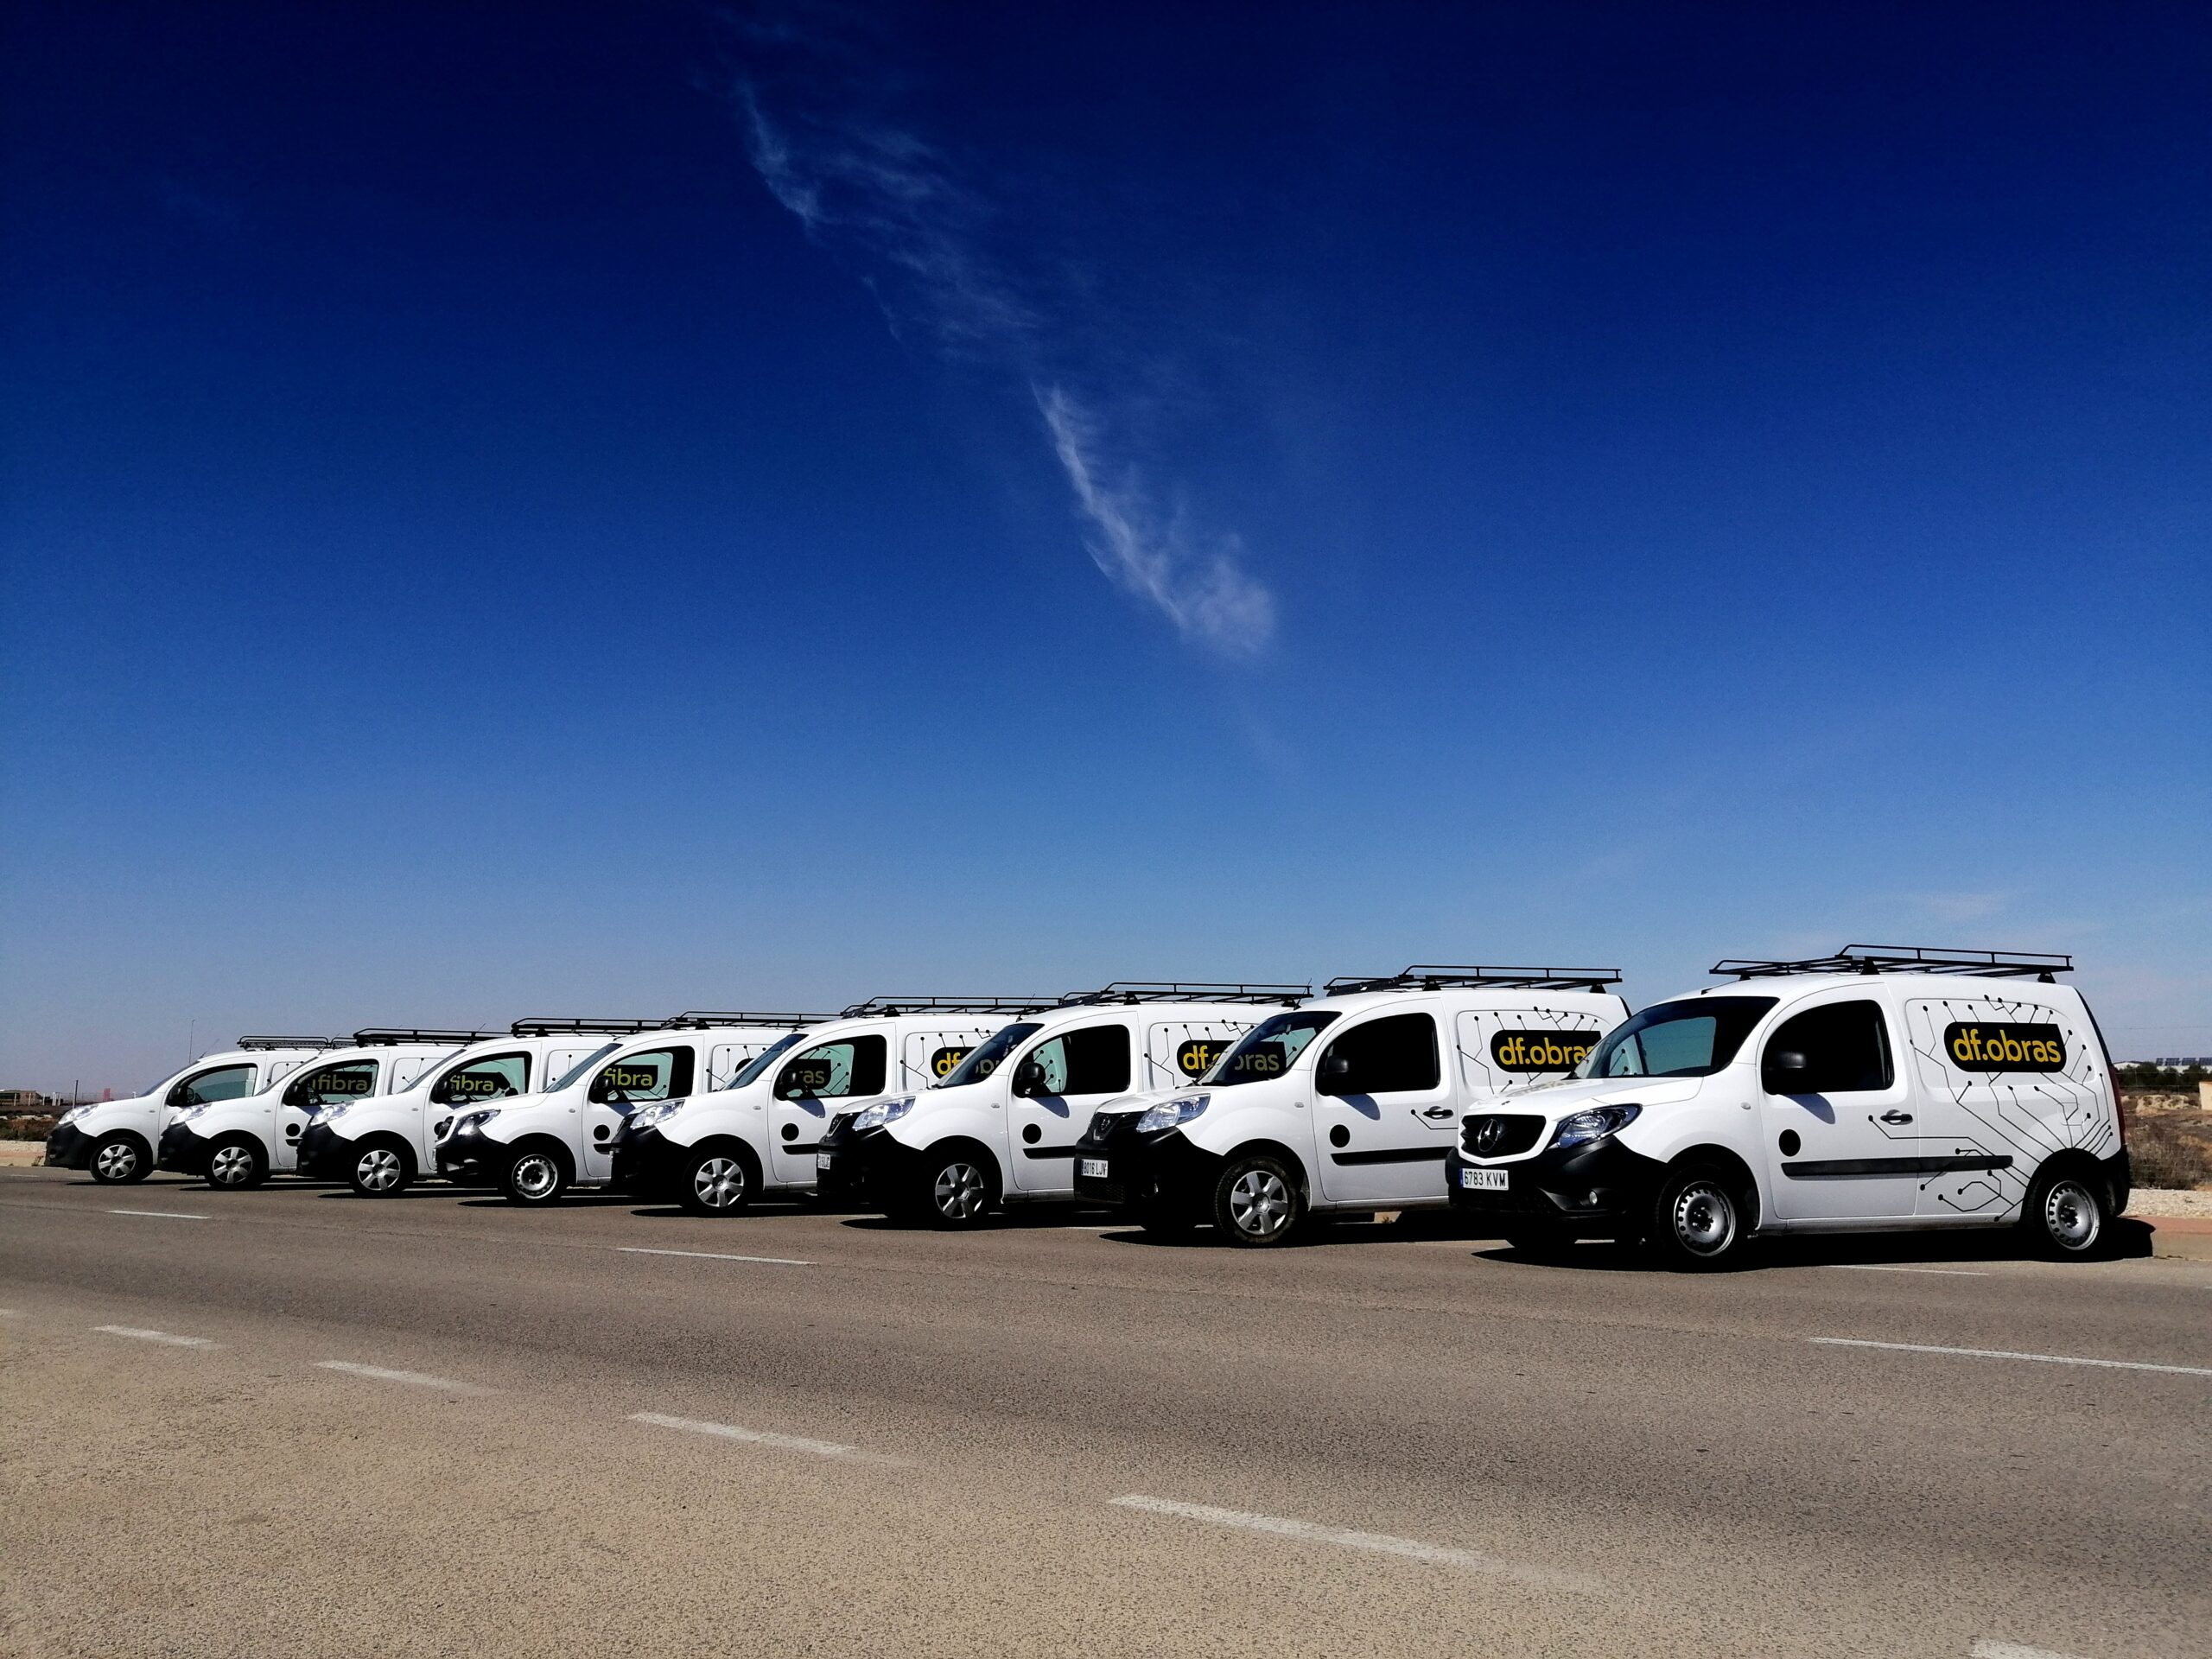 Flota de vehículos de df obras, lista para la ejecución de proyectos de canalización y redes.